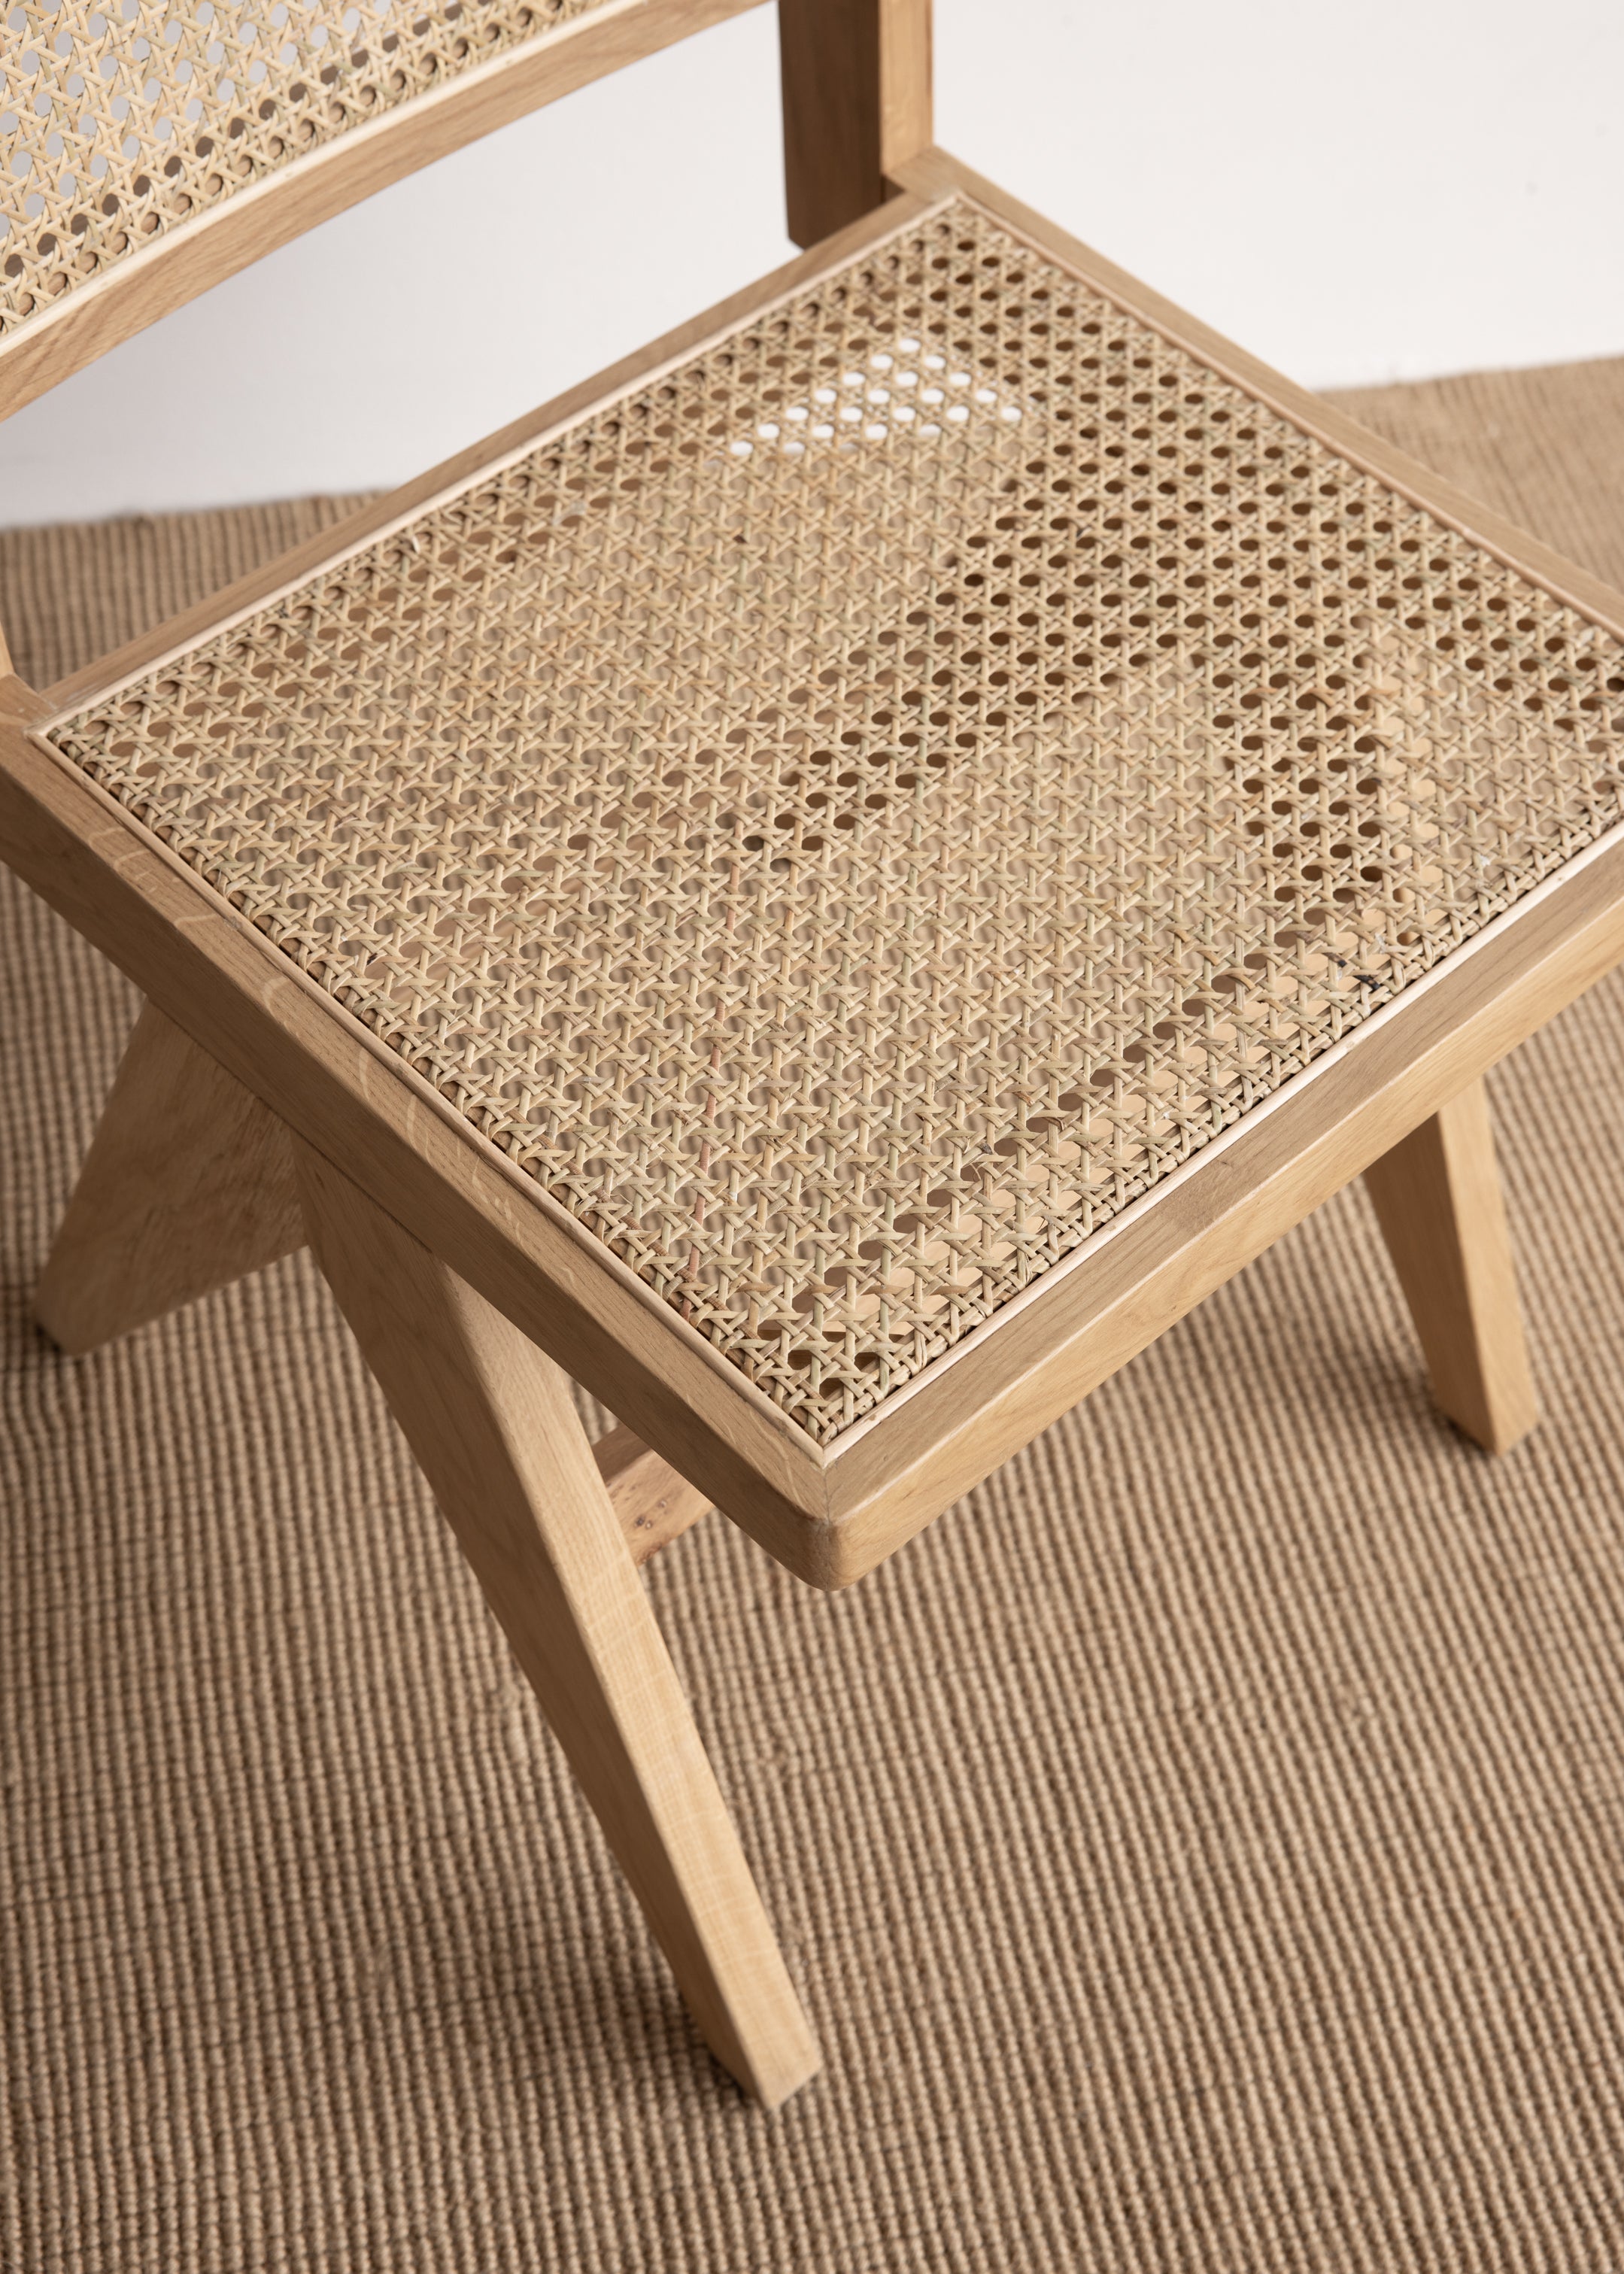 Nalu Chair Oak Rattan / Natural